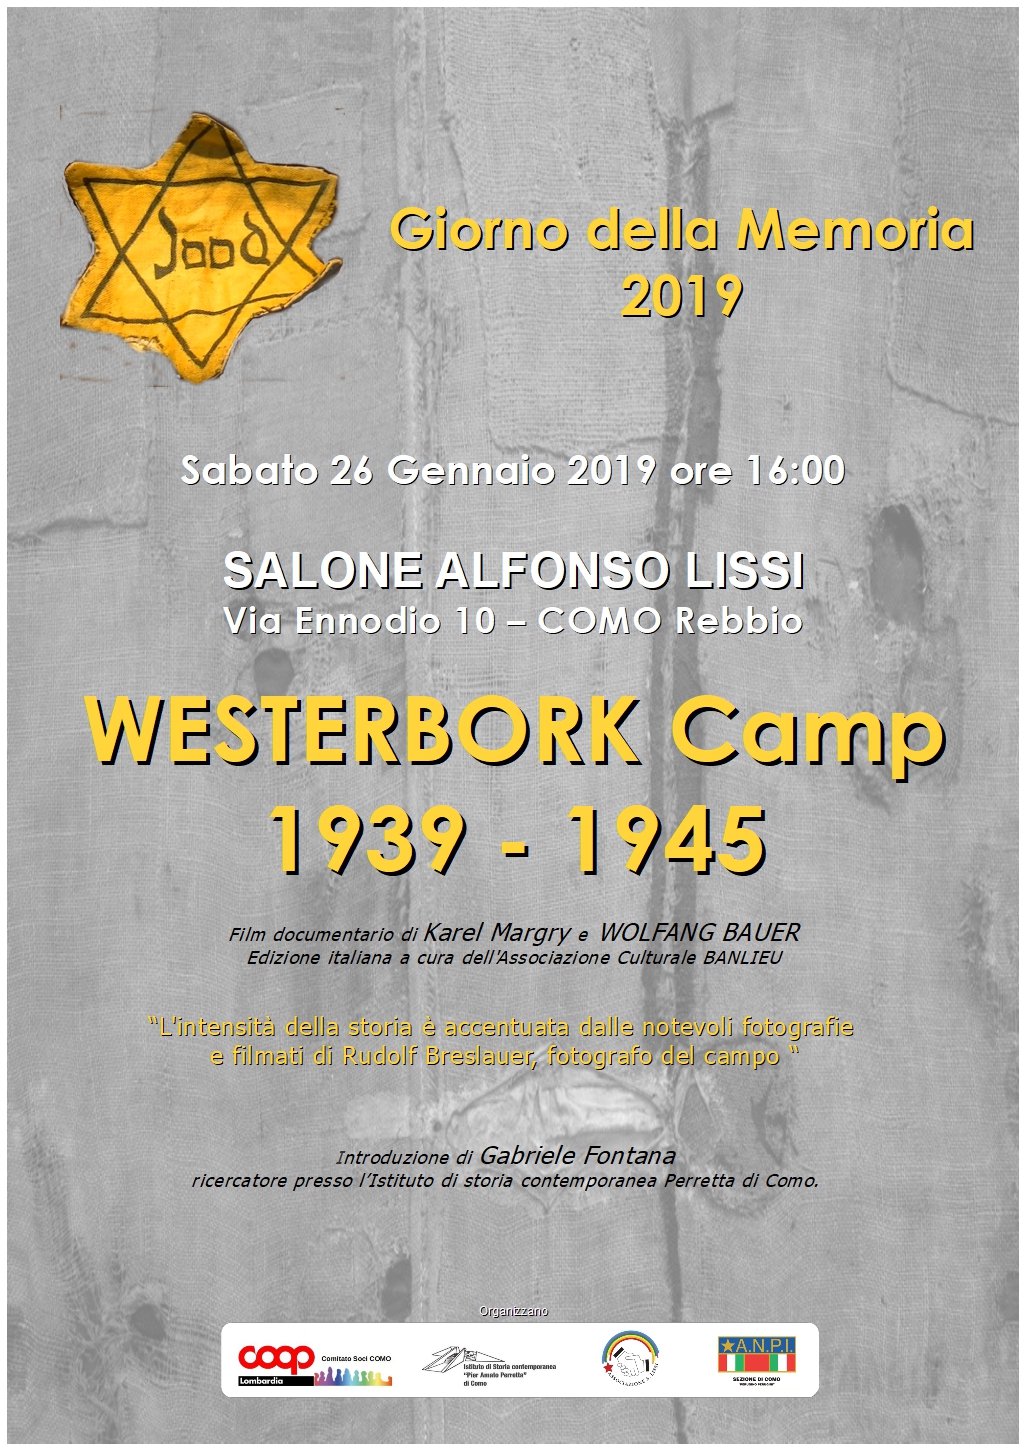 Giornata della memoria 2019 Westerbork Camp